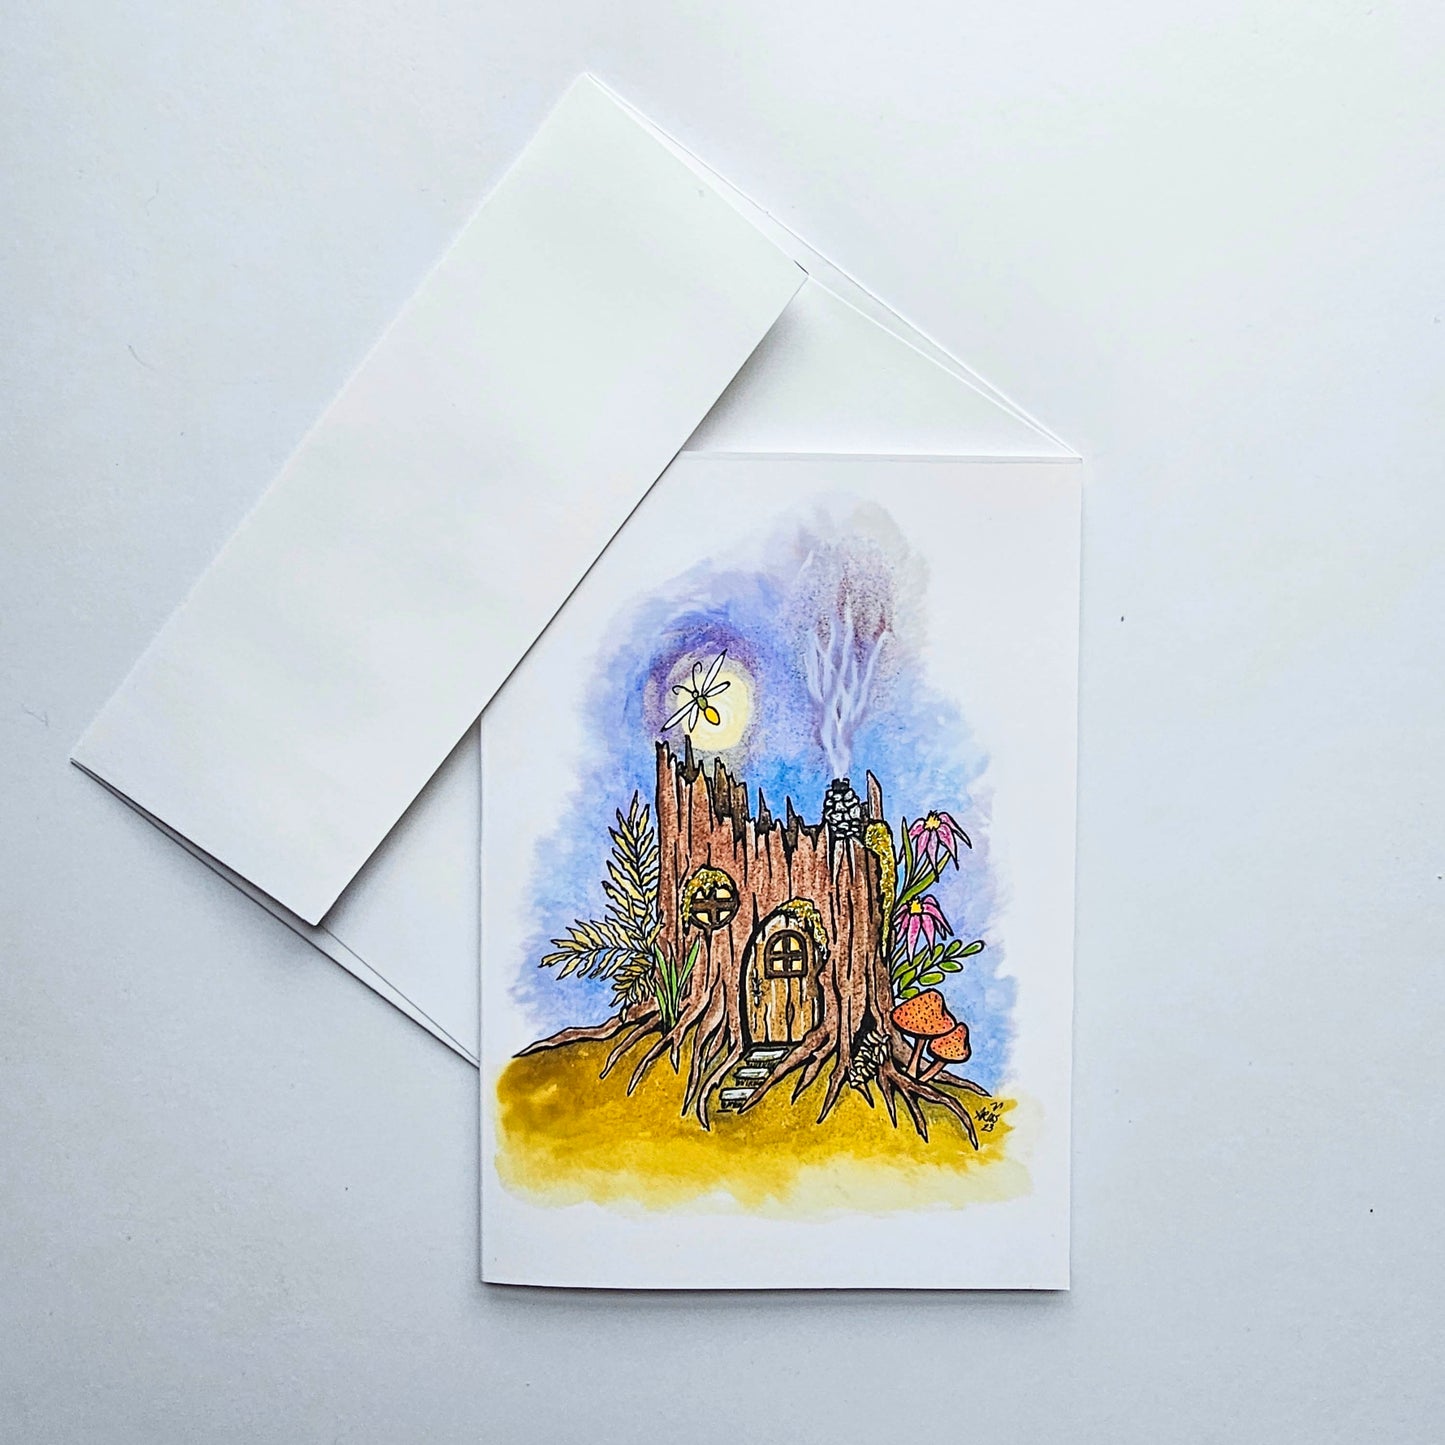 Fairy Homes 5"x7" Frameable Cards